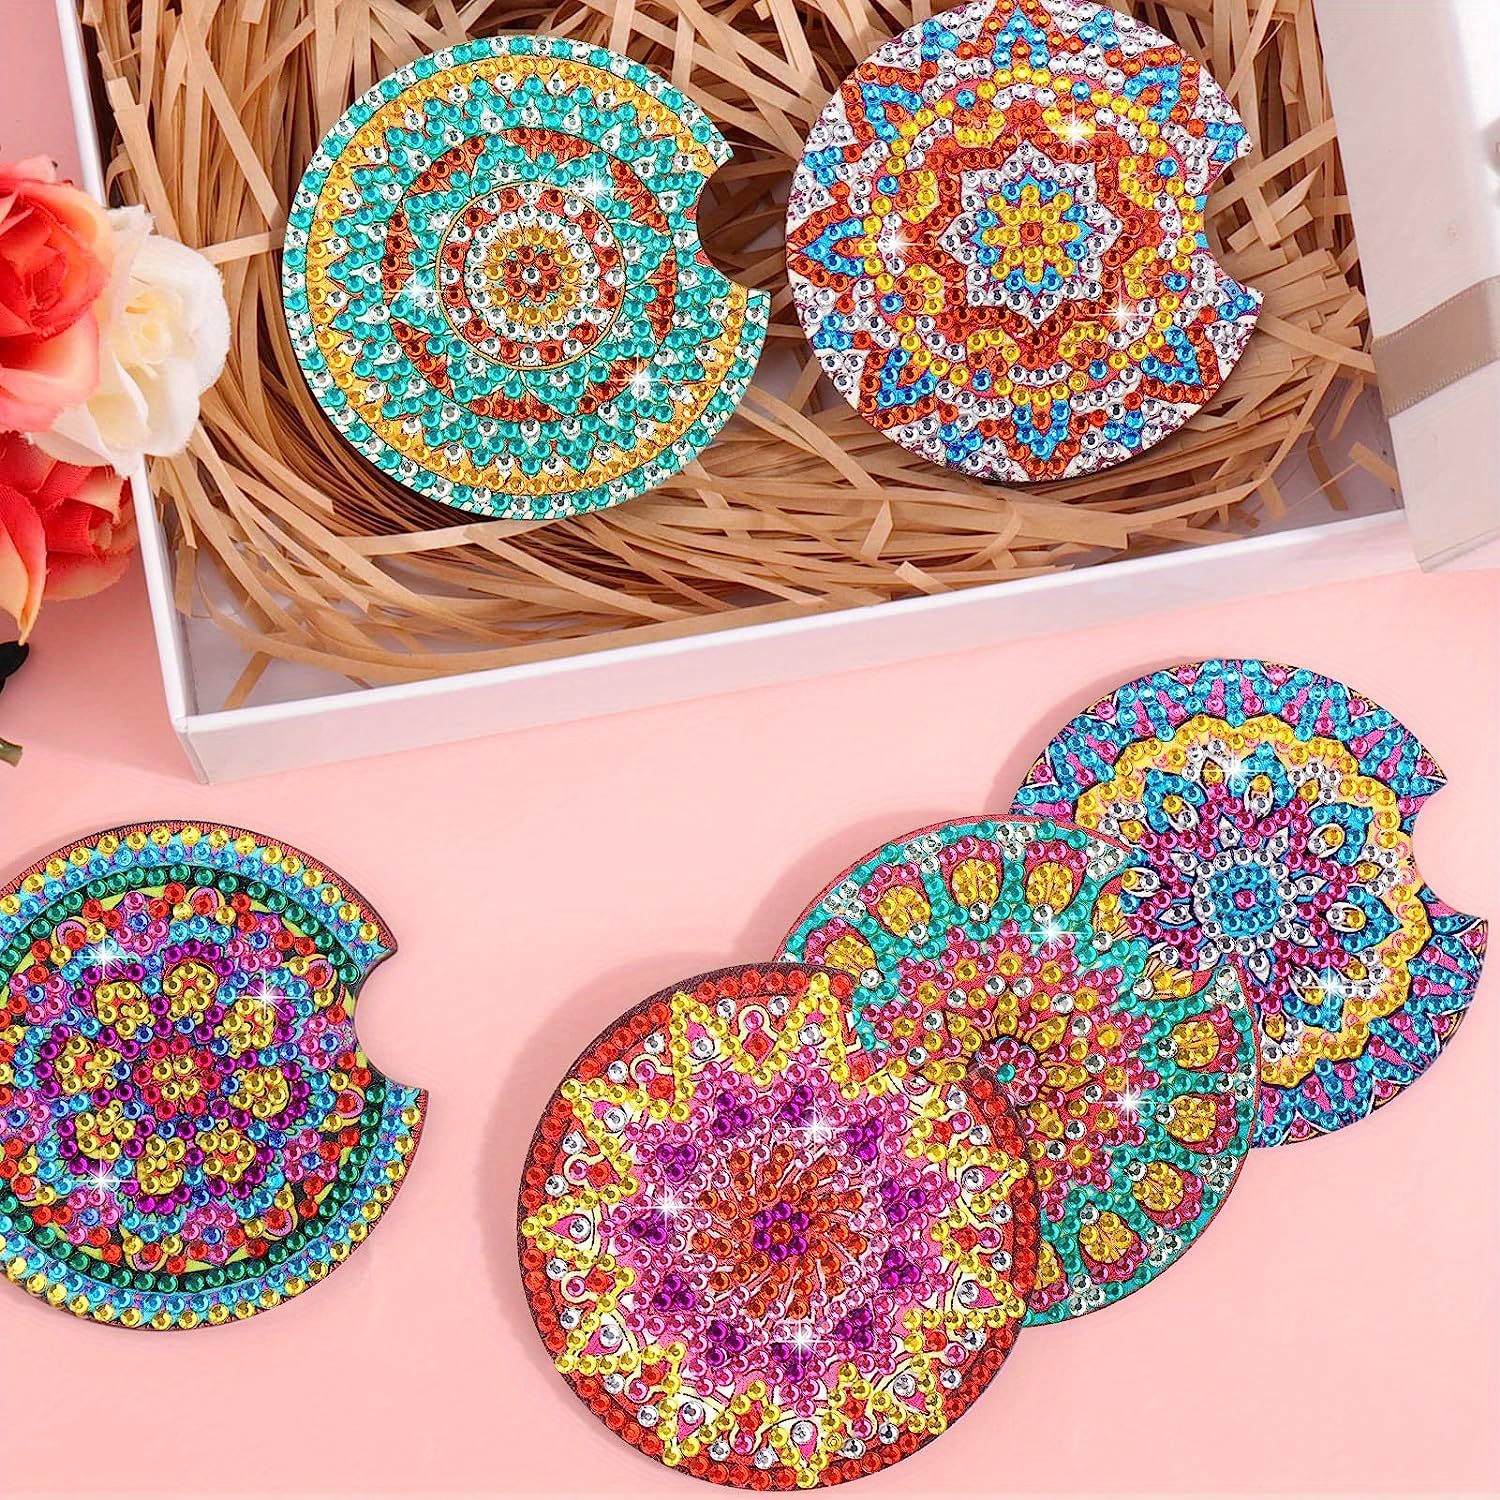 8 Coasters DIY Diamond Painting Kits